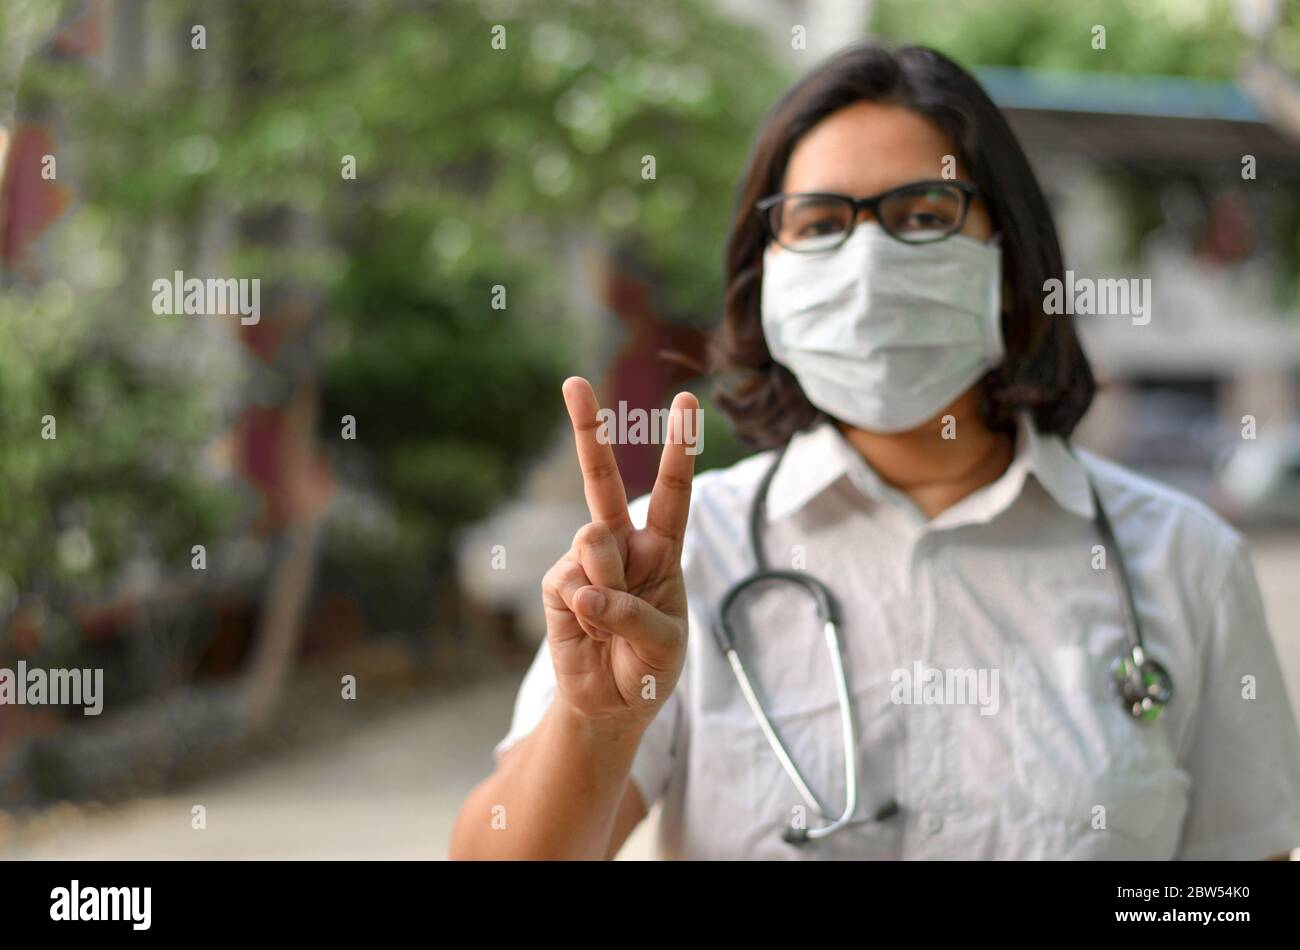 Porträt einer jungen medizinischen Arbeiterin, die mit ihrer rechten Hand ein Siegeszeichen macht und eine chirurgische Maske trägt, um sich vor Corona VI zu schützen Stockfoto